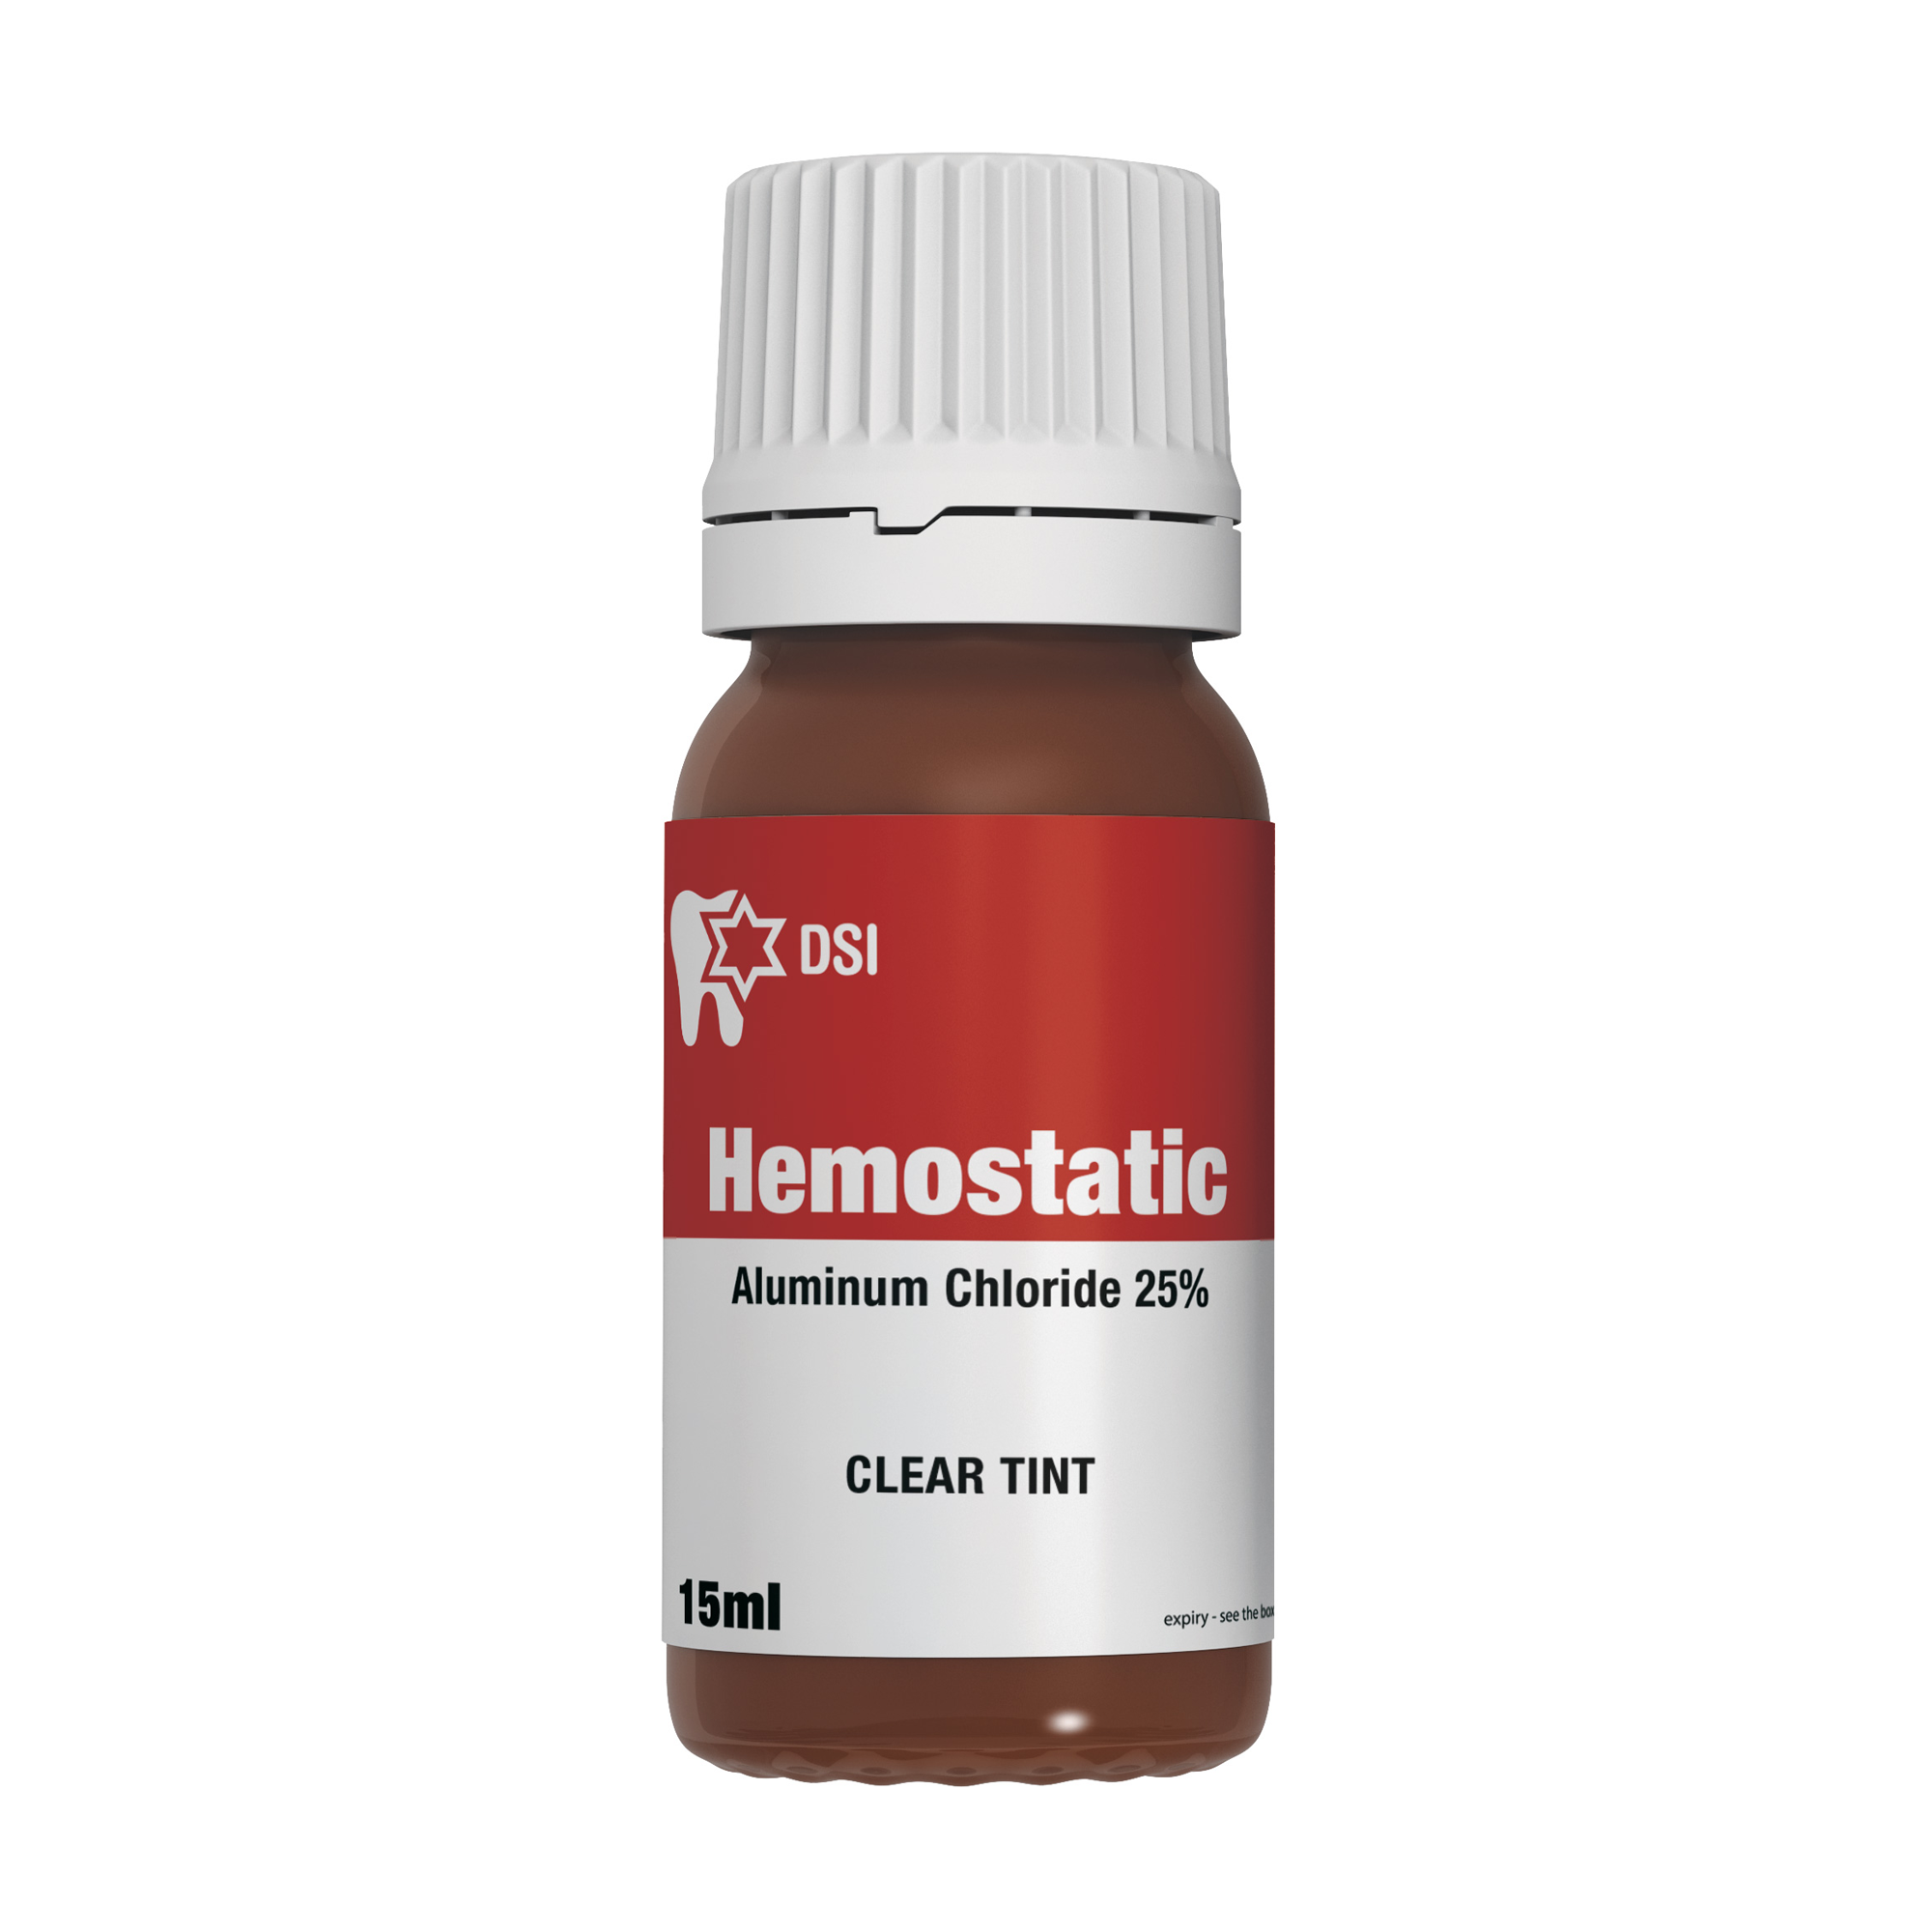 DSI Hemostatic Liquid 25% aluminum chloride Stops Bleeding 15ml Bottle